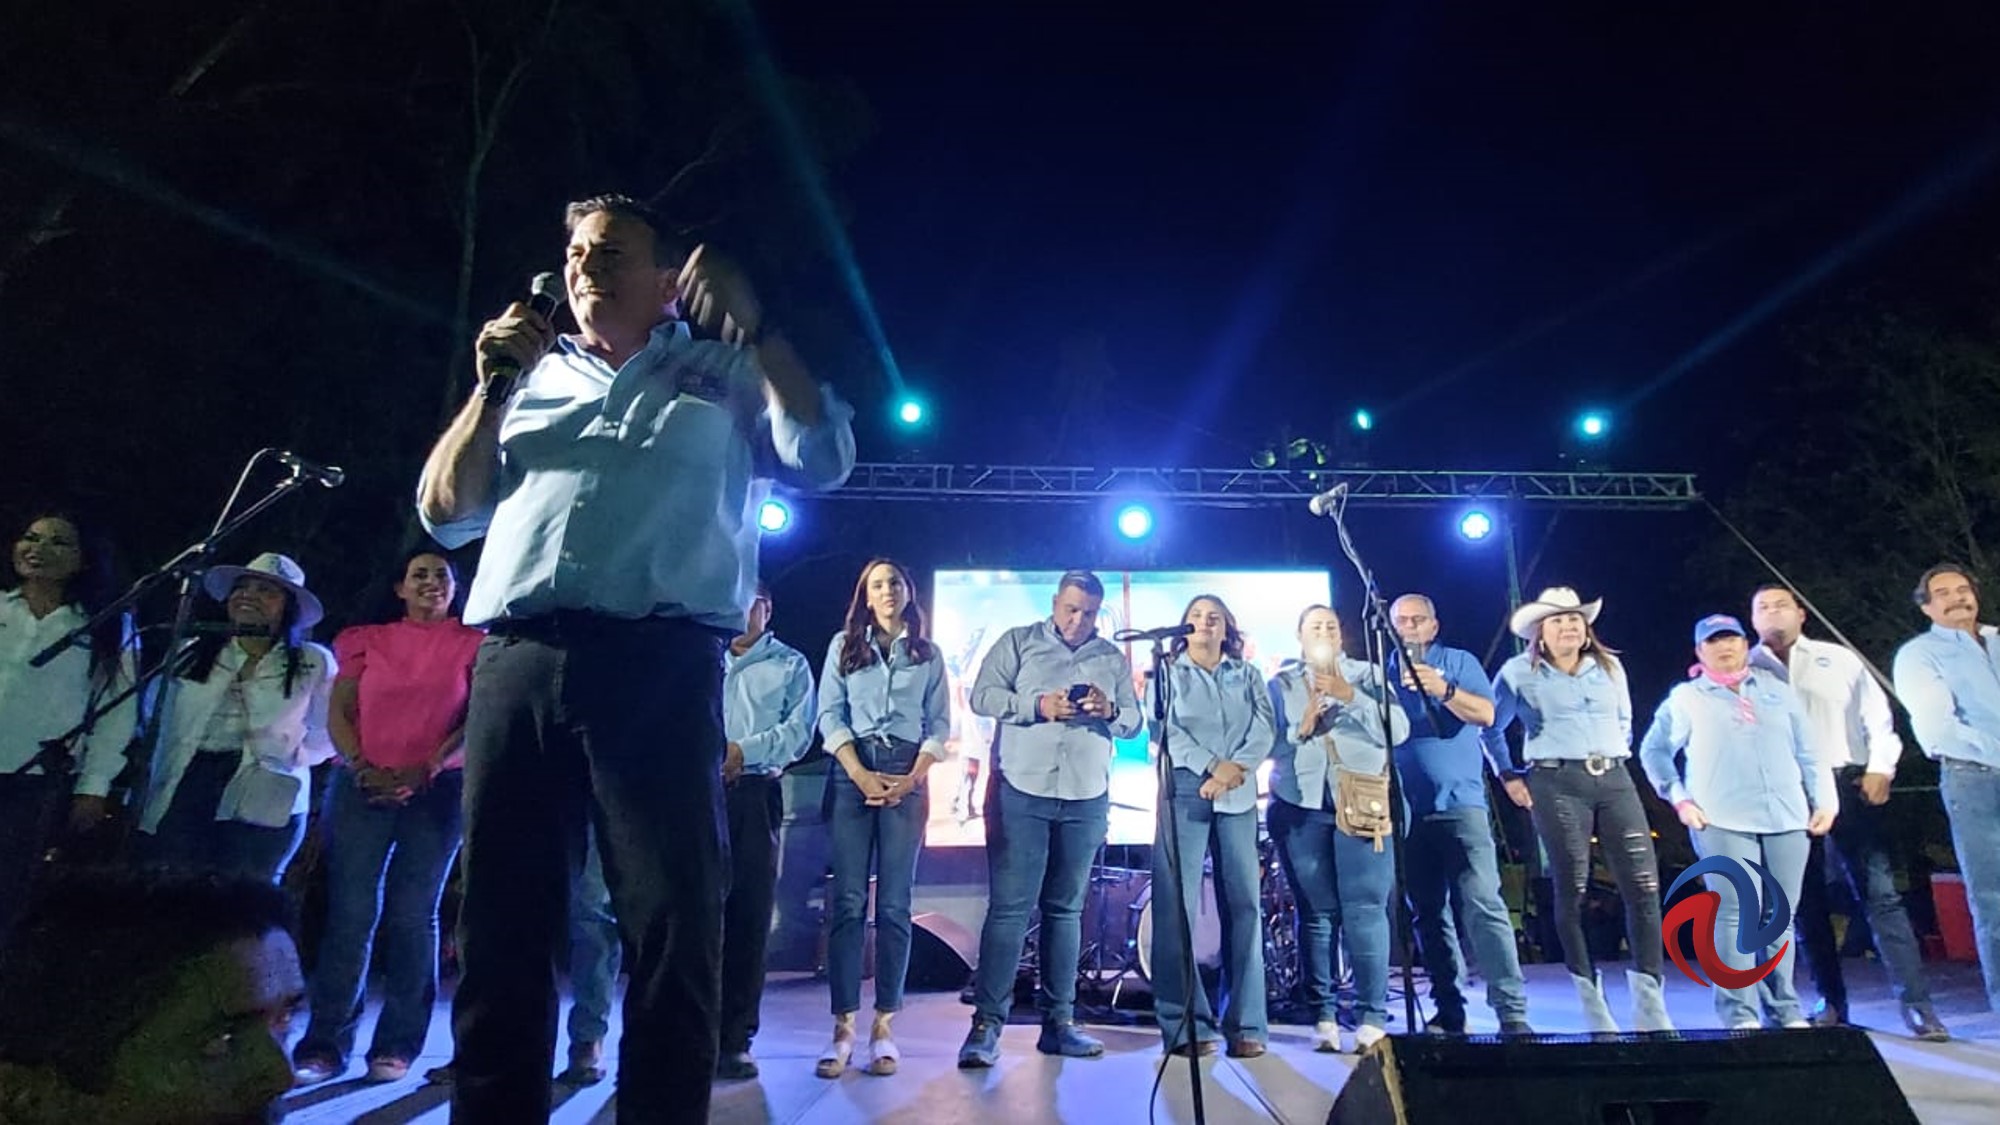 Con música y amenaza de bloqueo, cierra campaña Fiorentini en Mexicali